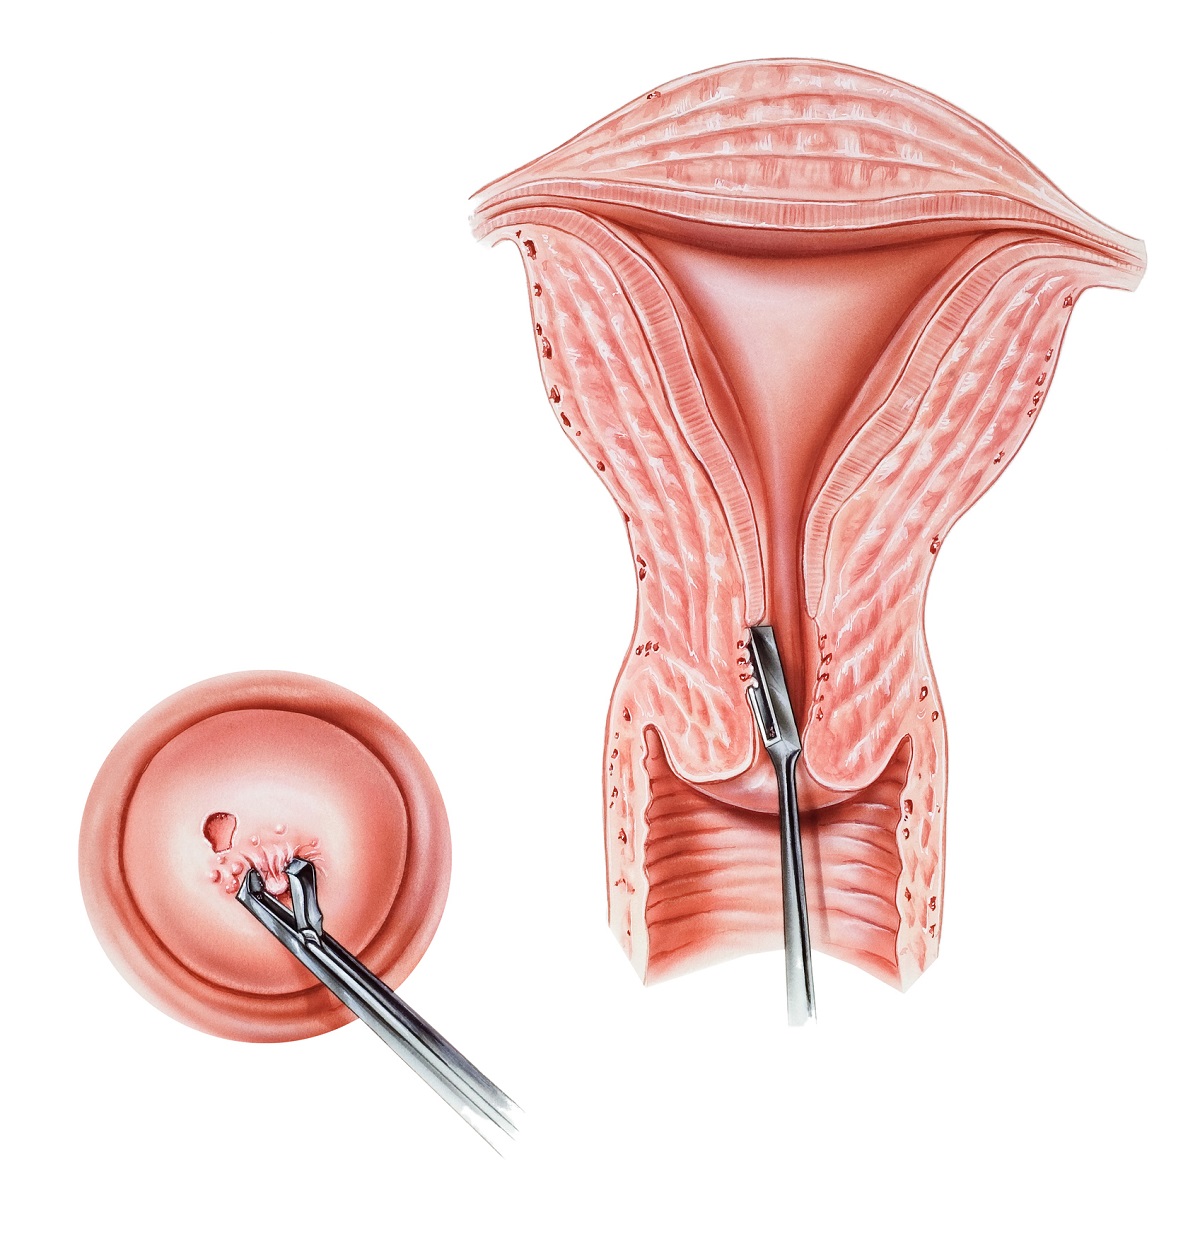 Biopsia je odber vzorky tkaniva z krčka maternice. Zdroj: Getty Images